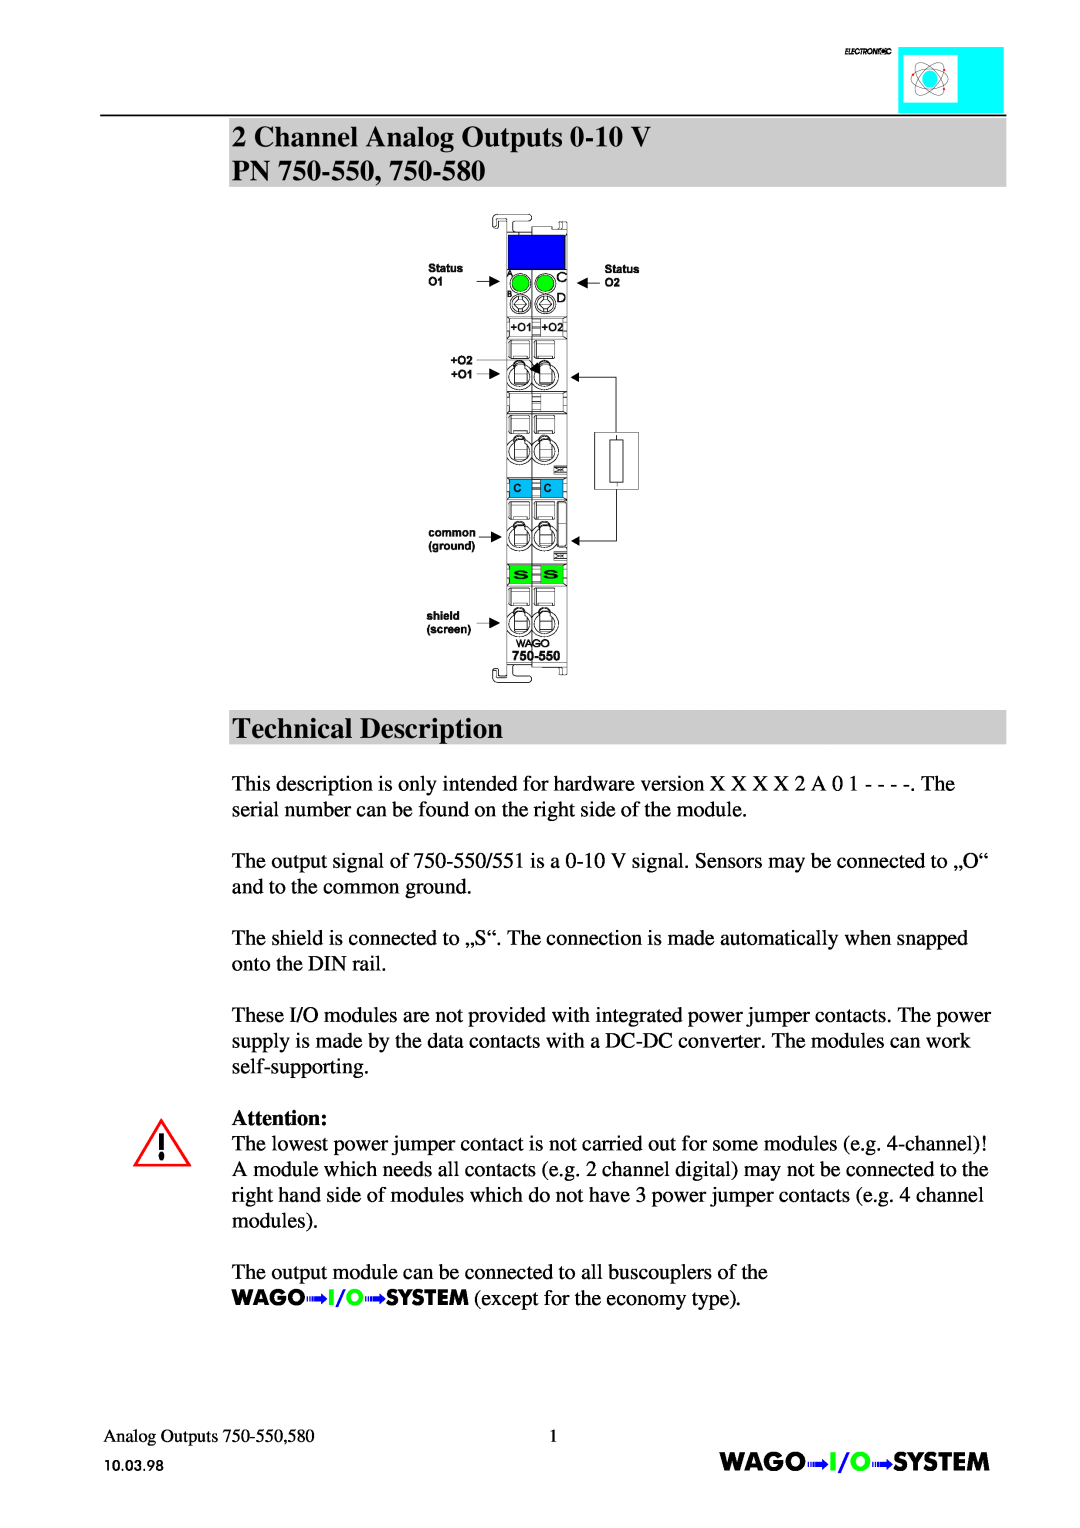 Quatech INTERBUS S manual Channel Analog Outputs 0-10 V PN 750-550 Technical Description, AnalogOutputs 750-550,580 